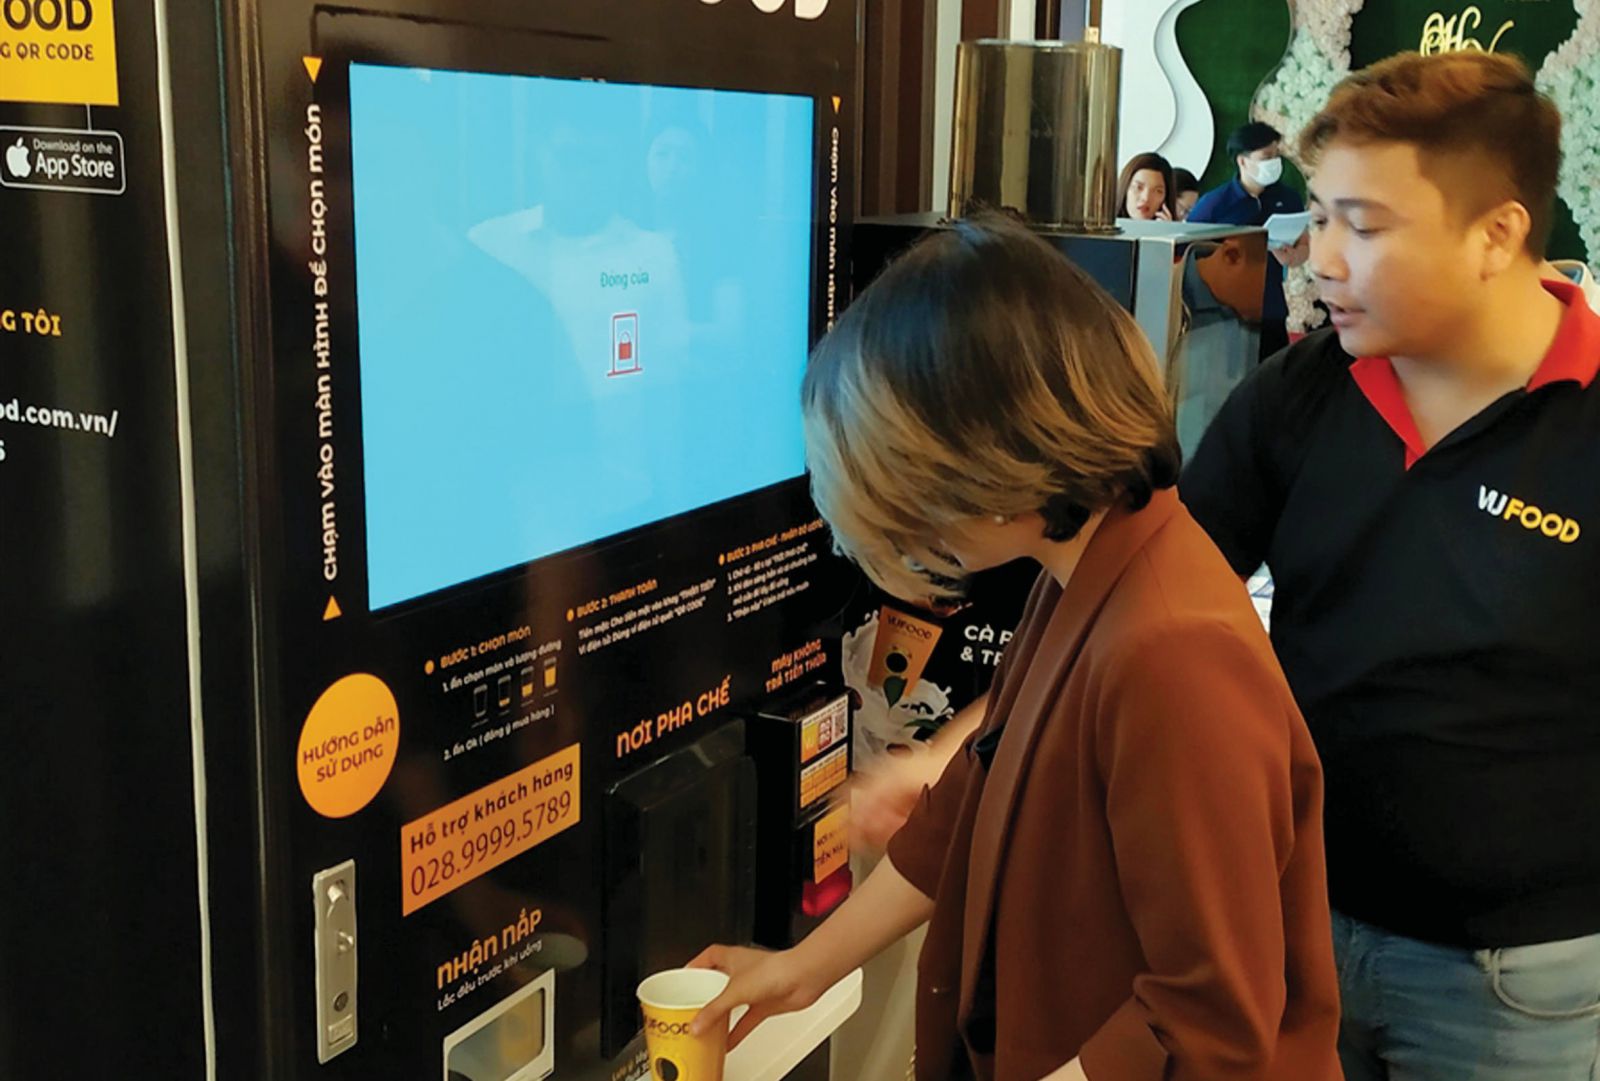 ản phẩm máy pha chế cà phê tự động được giới thiệu tại Hội thảo du lịch thông minh với chủ đề: Công nghệ và giải pháp cho ngành du lịch - dịch vụ thời kỳ hậu COVID-19 tại Đà Nẵng. Ảnh: Lê Lâm